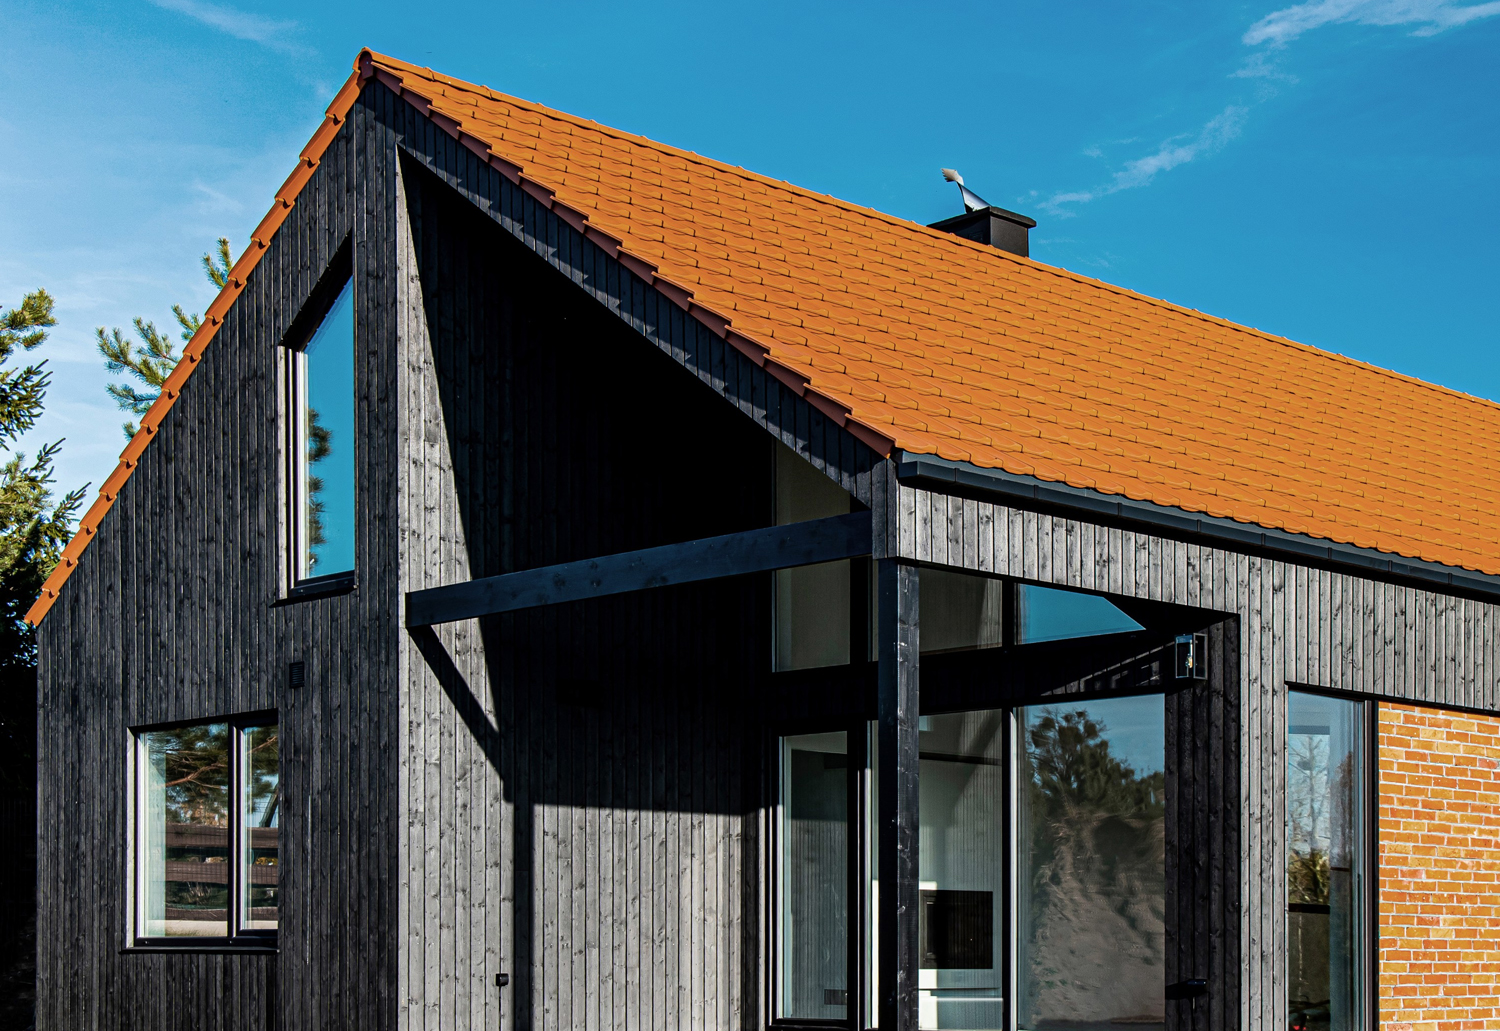 Dachówka ceramiczna na dachu drewnianego domu